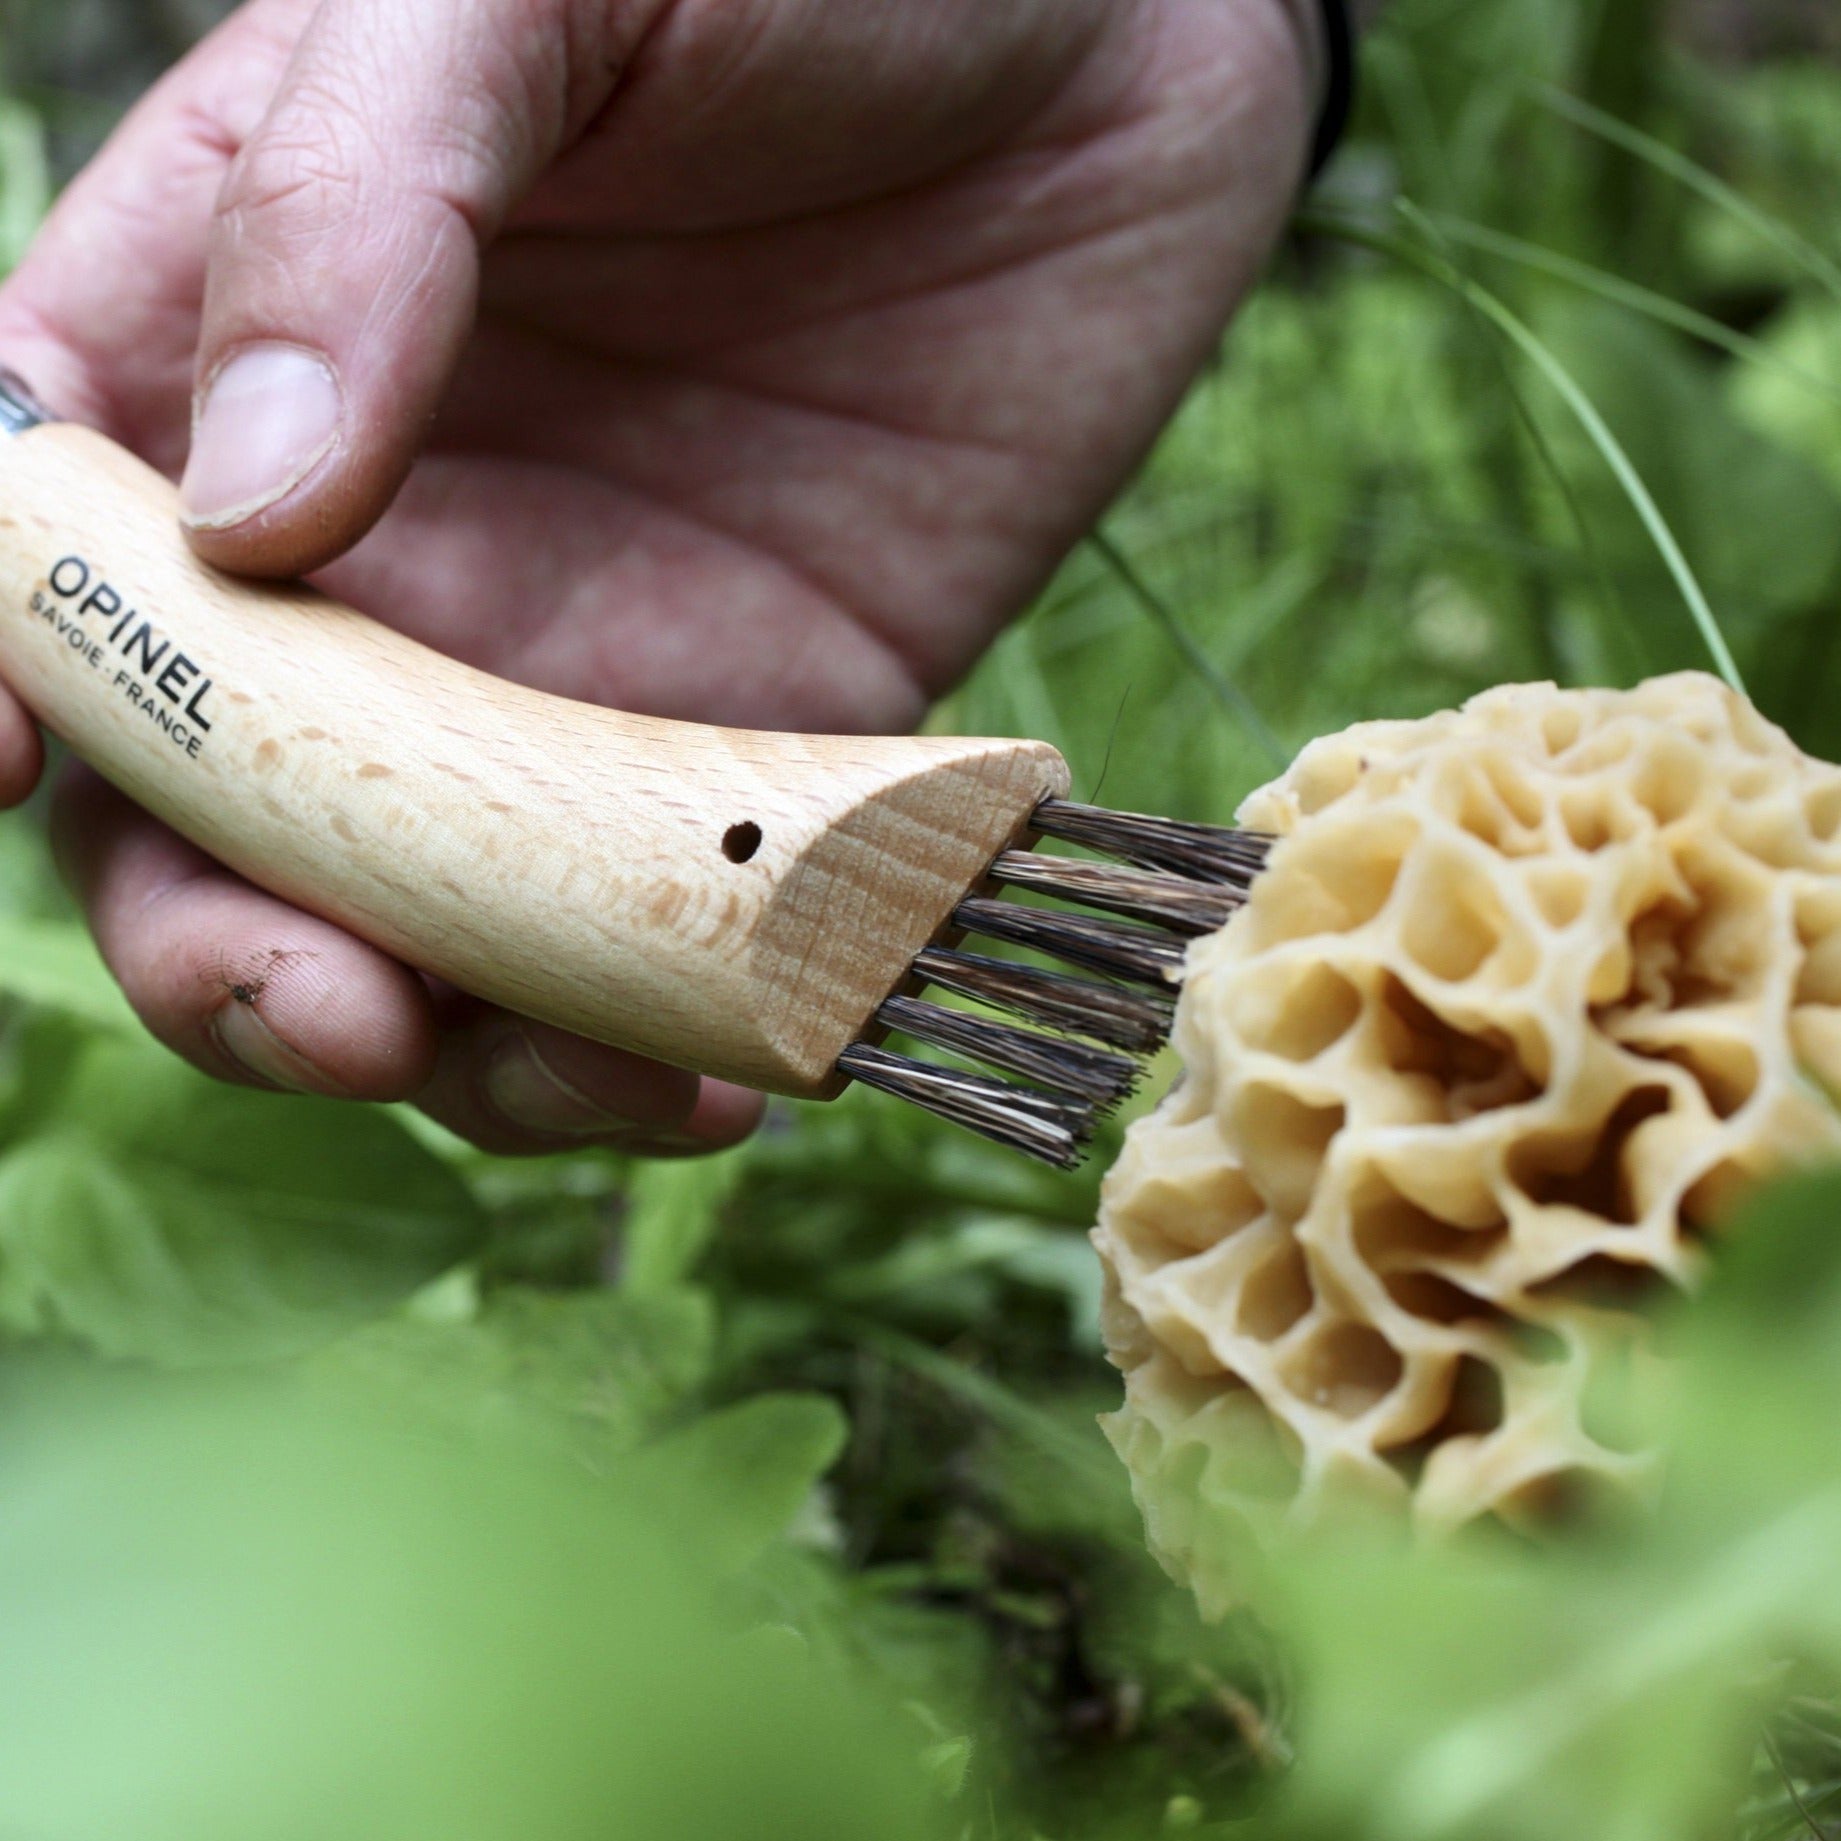 Mushroom Knife 